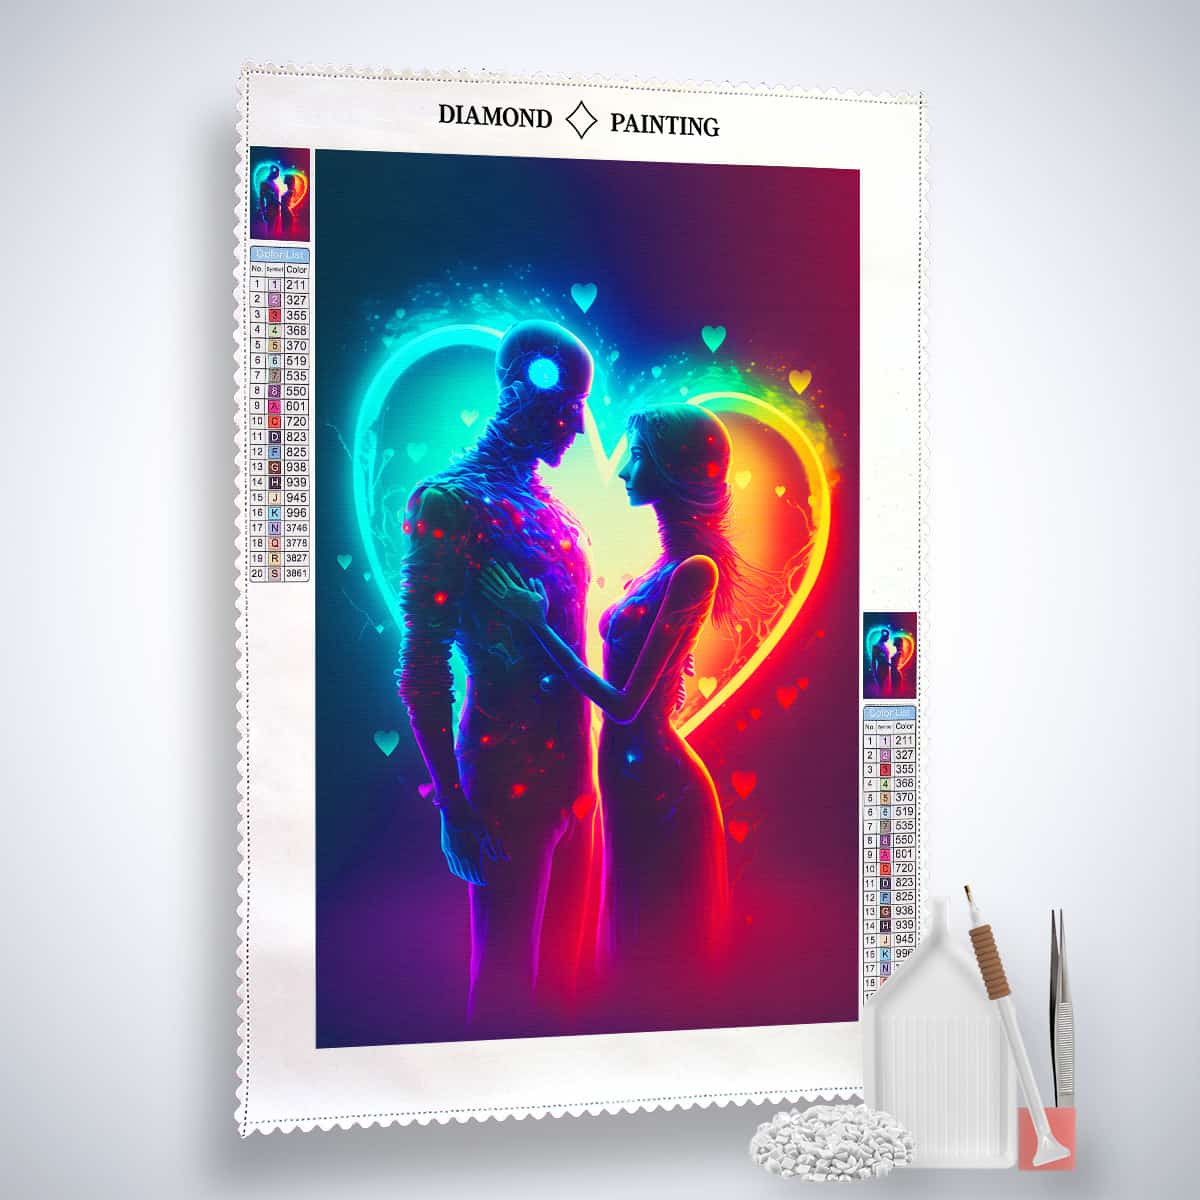 Diamond Painting - Liebespaar mit Herz - gedruckt in Ultra-HD - Herz, Liebe, Neu eingetroffen, Vertikal